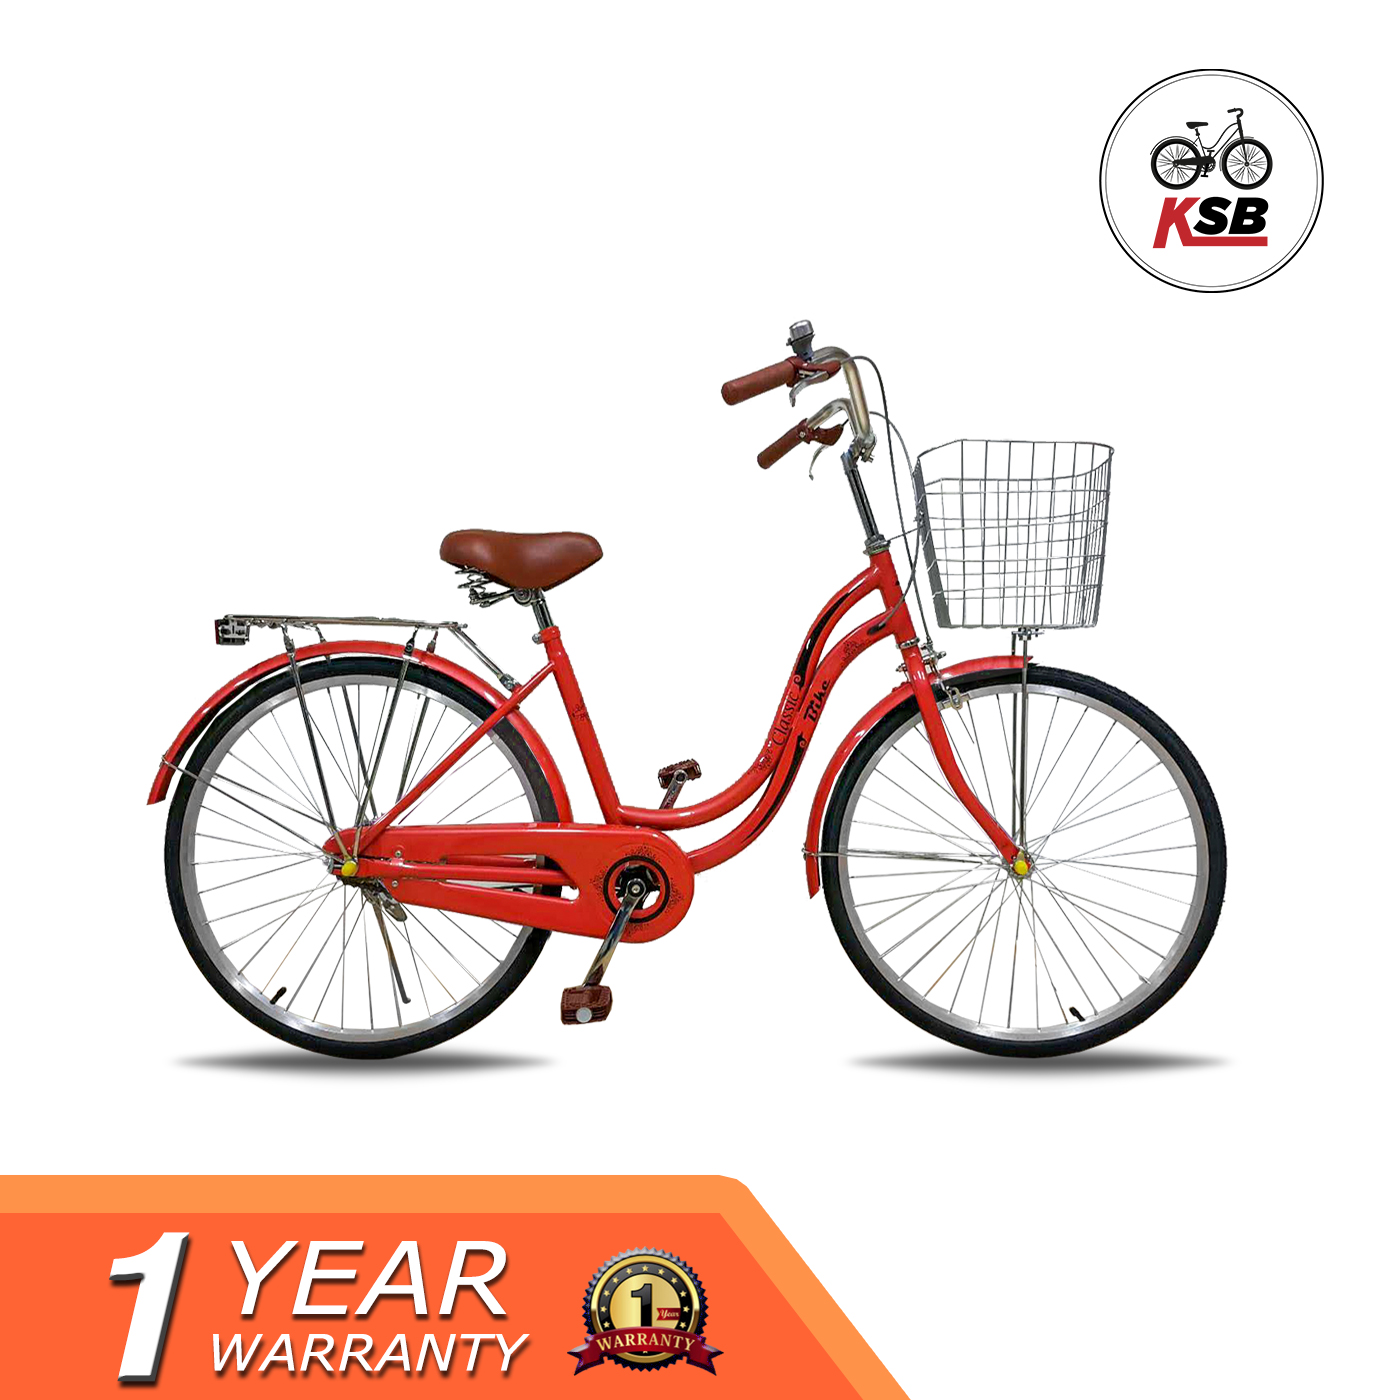 จักรยานแม่บ้าน KSB ทรงญี่ปุ่น รุ่นClassic ขายดี สีแดง เชอรี่ 24นิ้ว